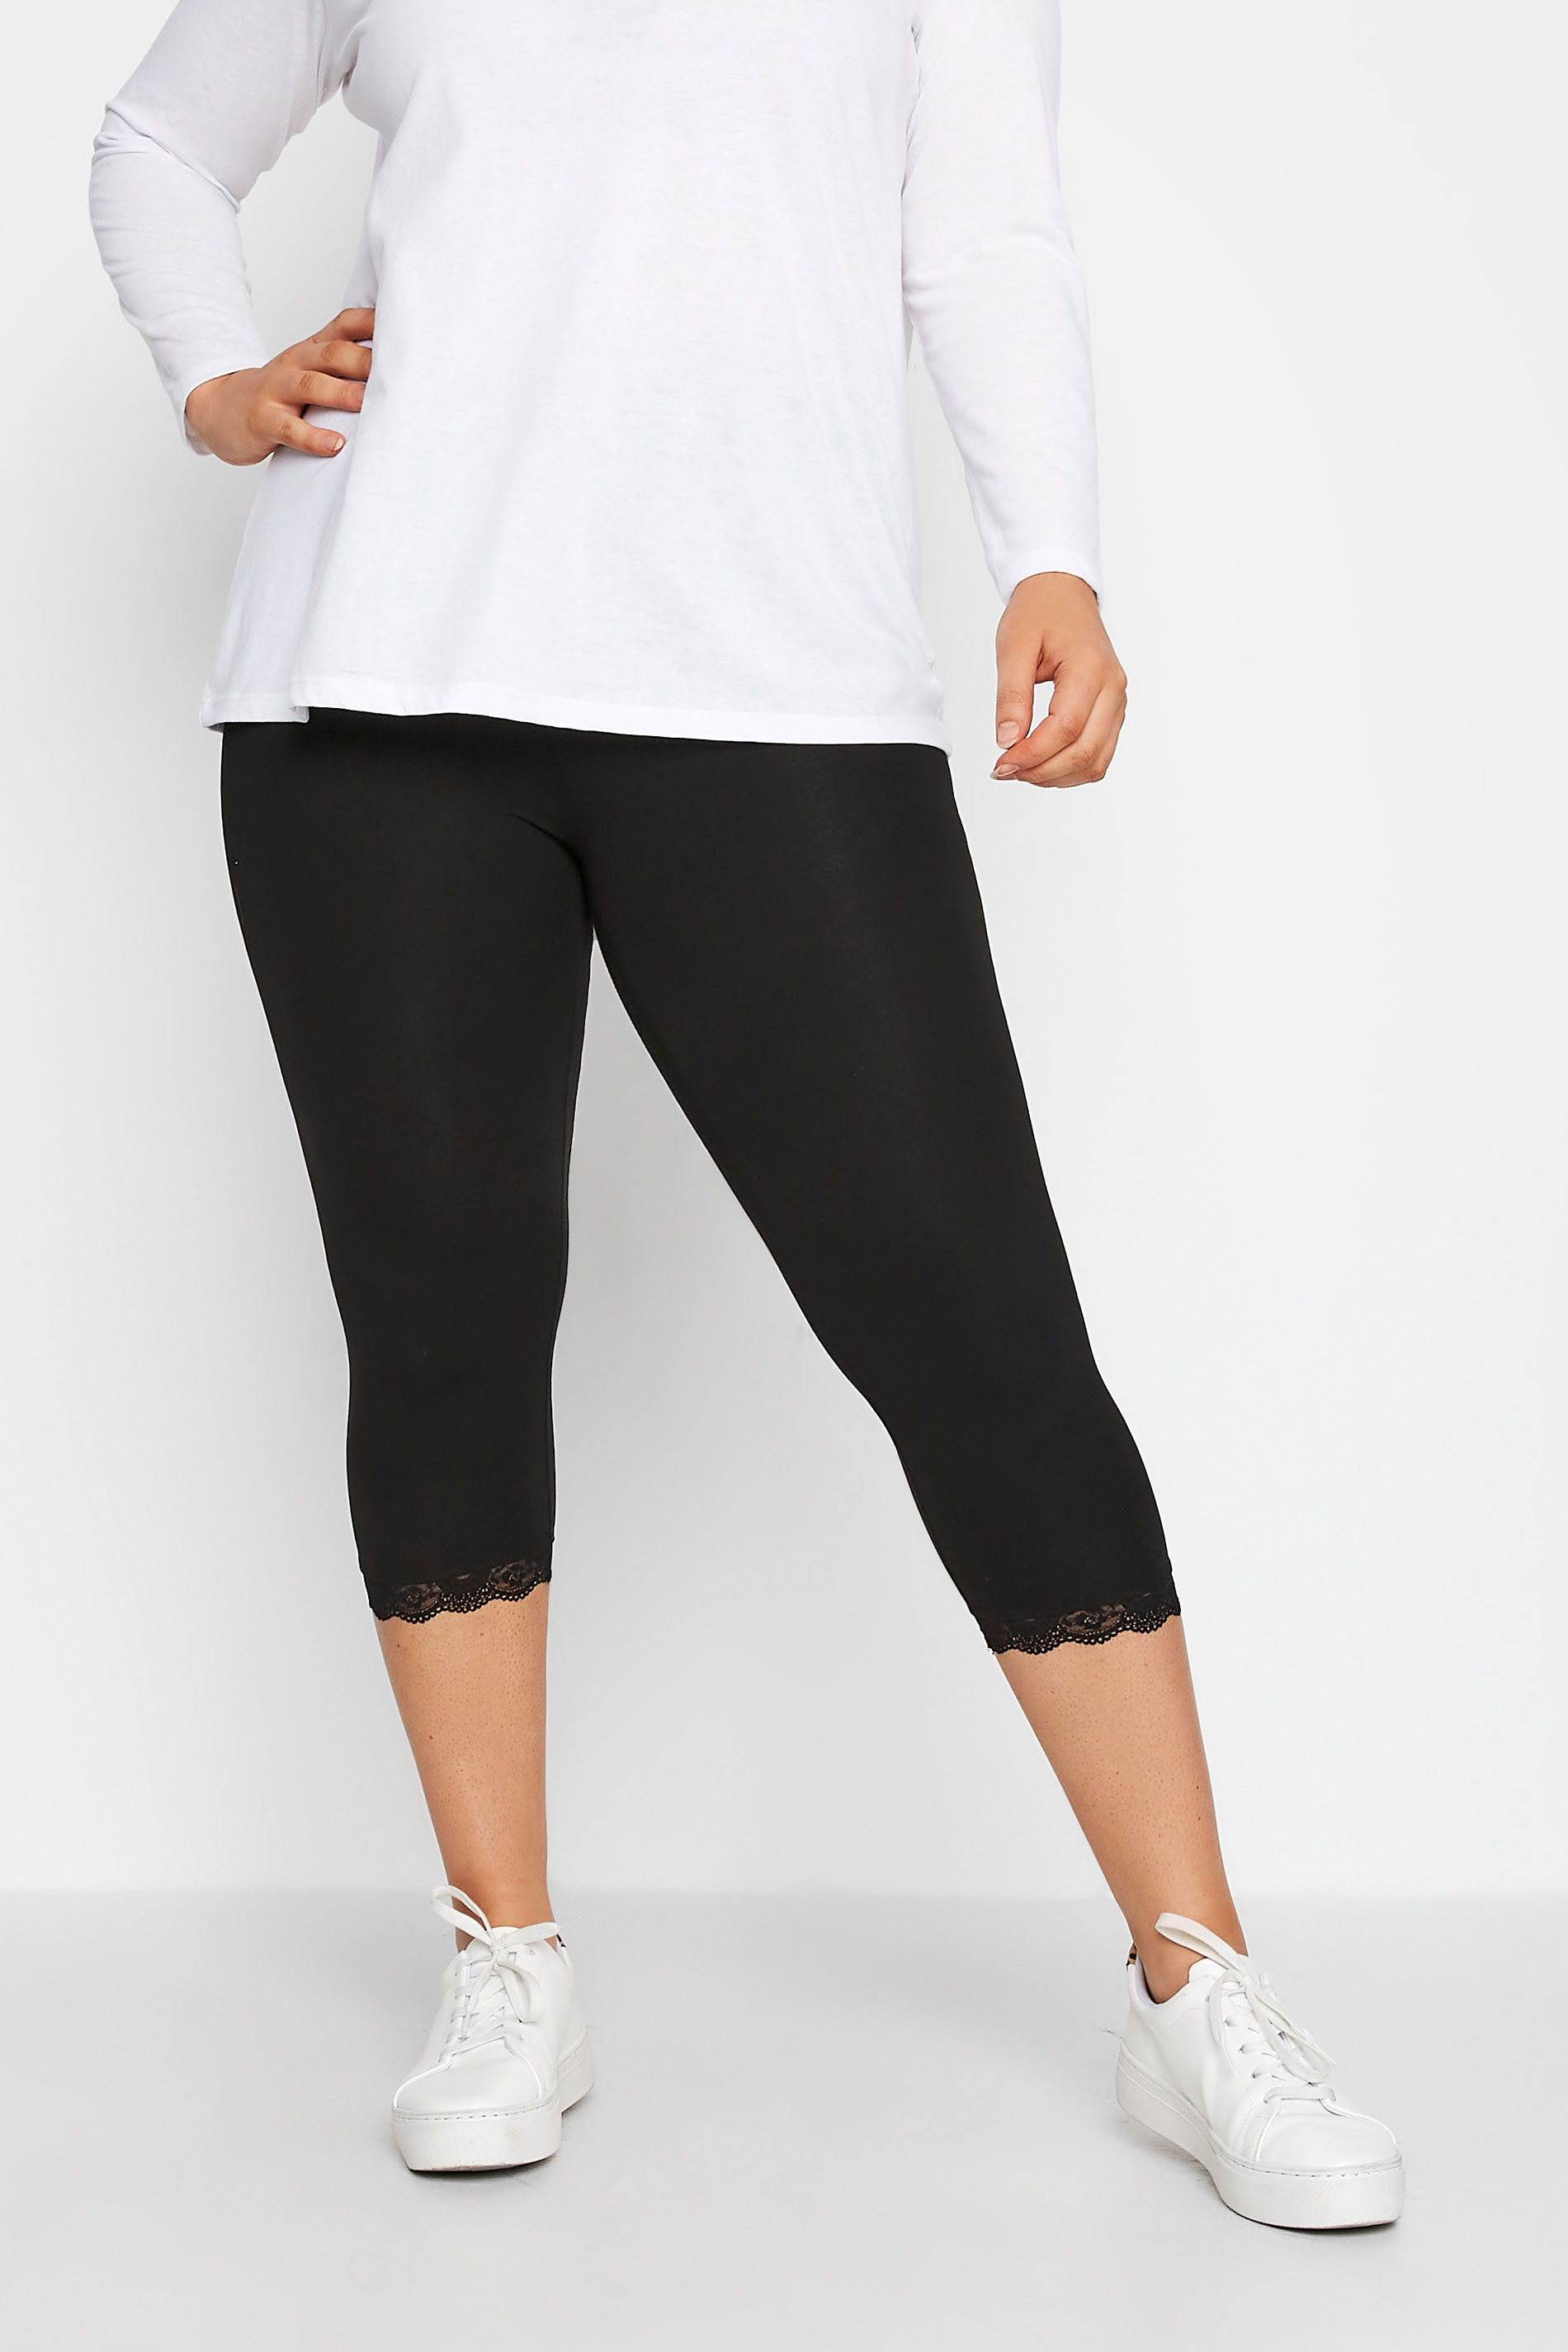 Plus Size Black Cotton Essential Lace Trim Crop Leggings | Yours Clothing 1